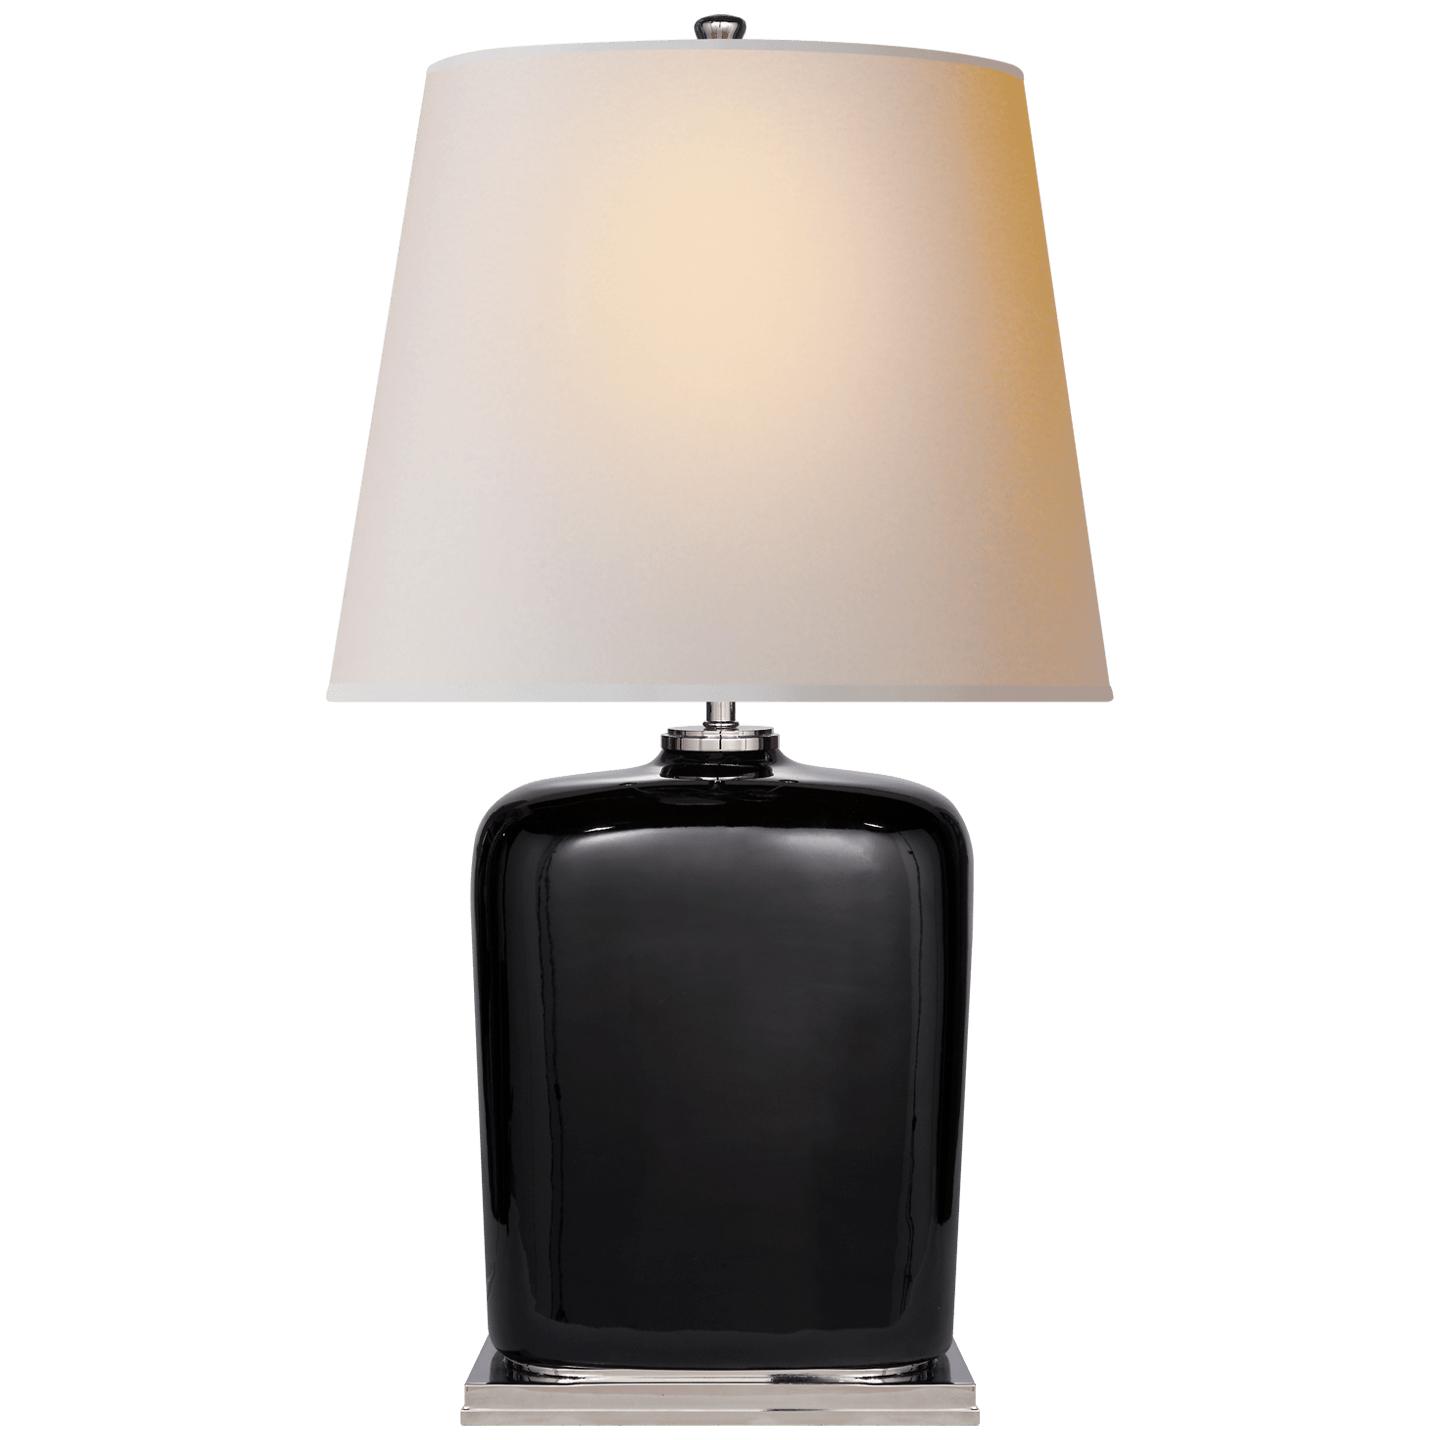 Купить Настольная лампа Mimi Table Lamp в интернет-магазине roooms.ru